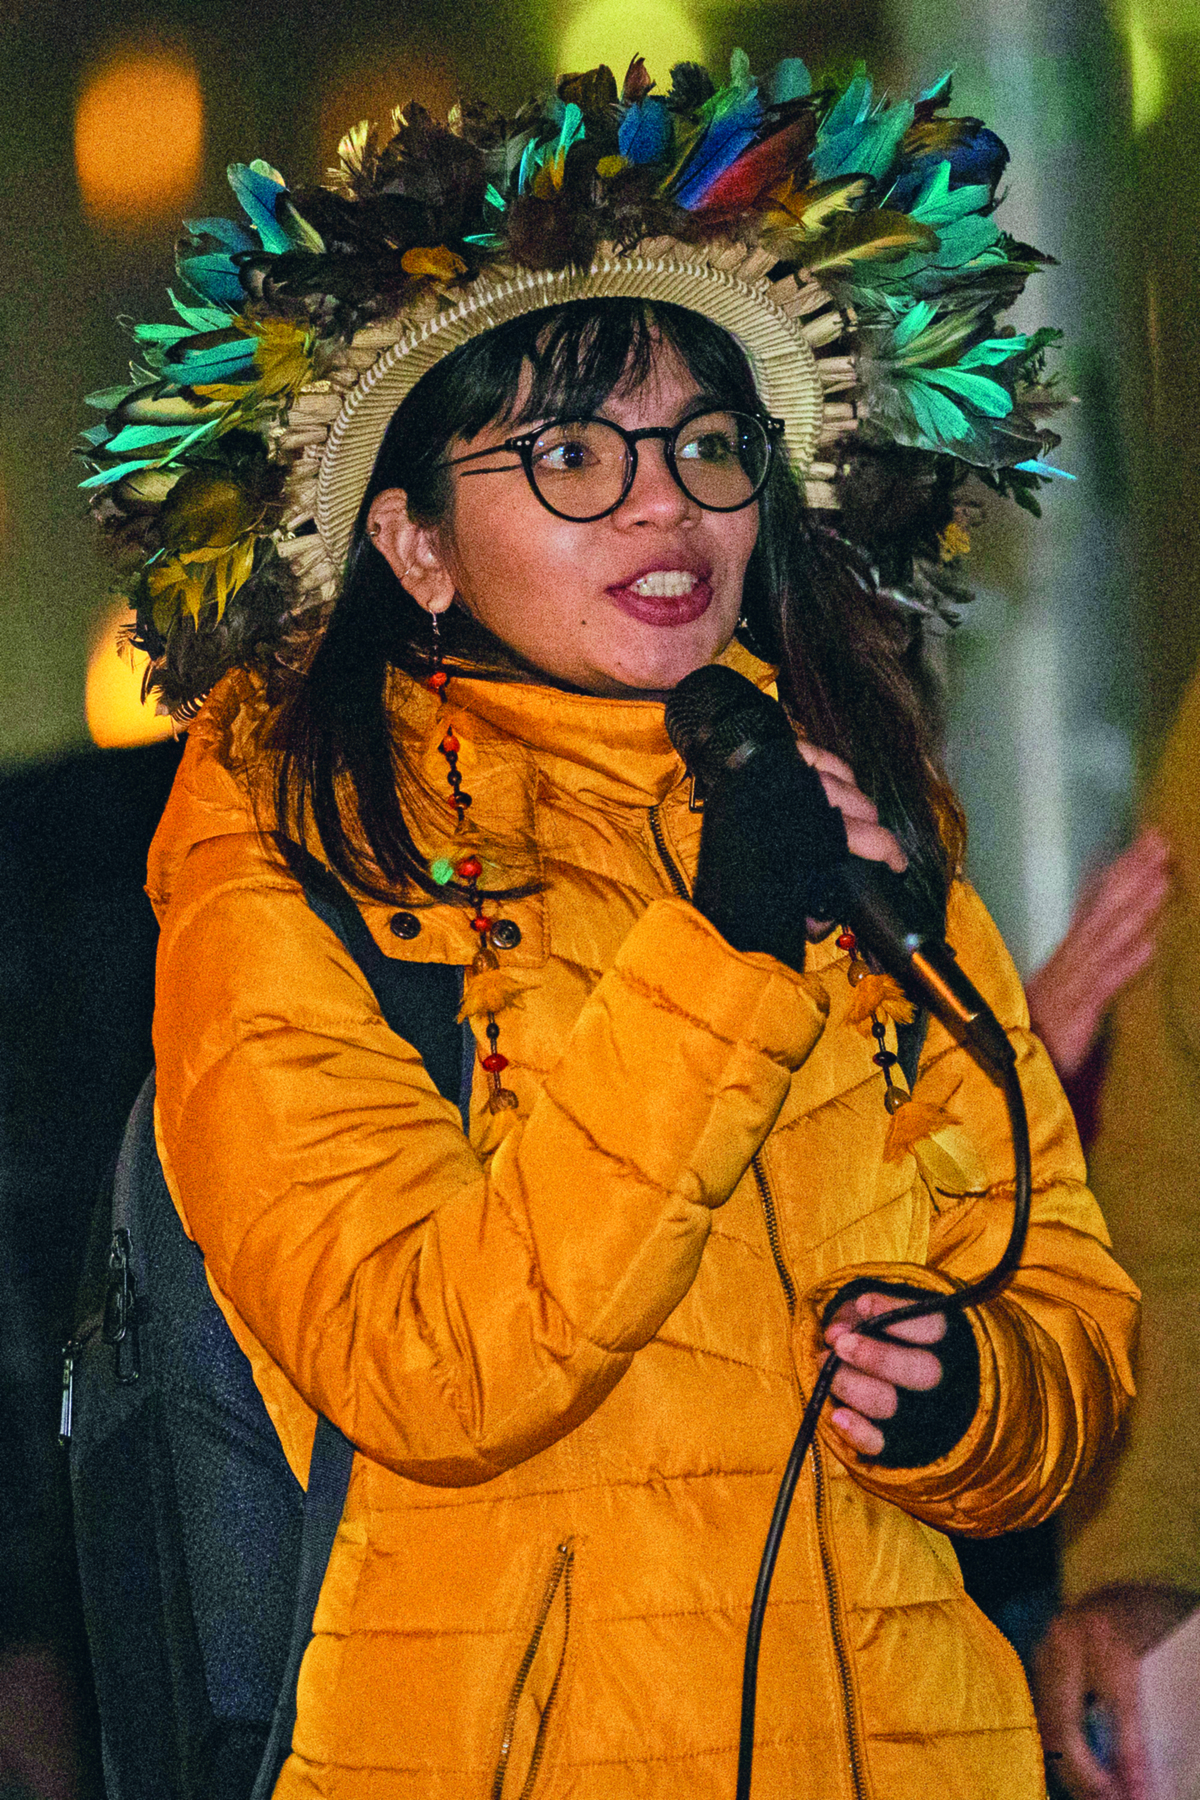 Fotografia. Destaque para mulher indígena, de cabelos longos, lisos e escuros, vestindo uma jaqueta amarela, um par de óculos no rosto e um cocar com penas coloridas na cabeça. Ela segura um microfone com uma das mãos, em direção a sua boca.